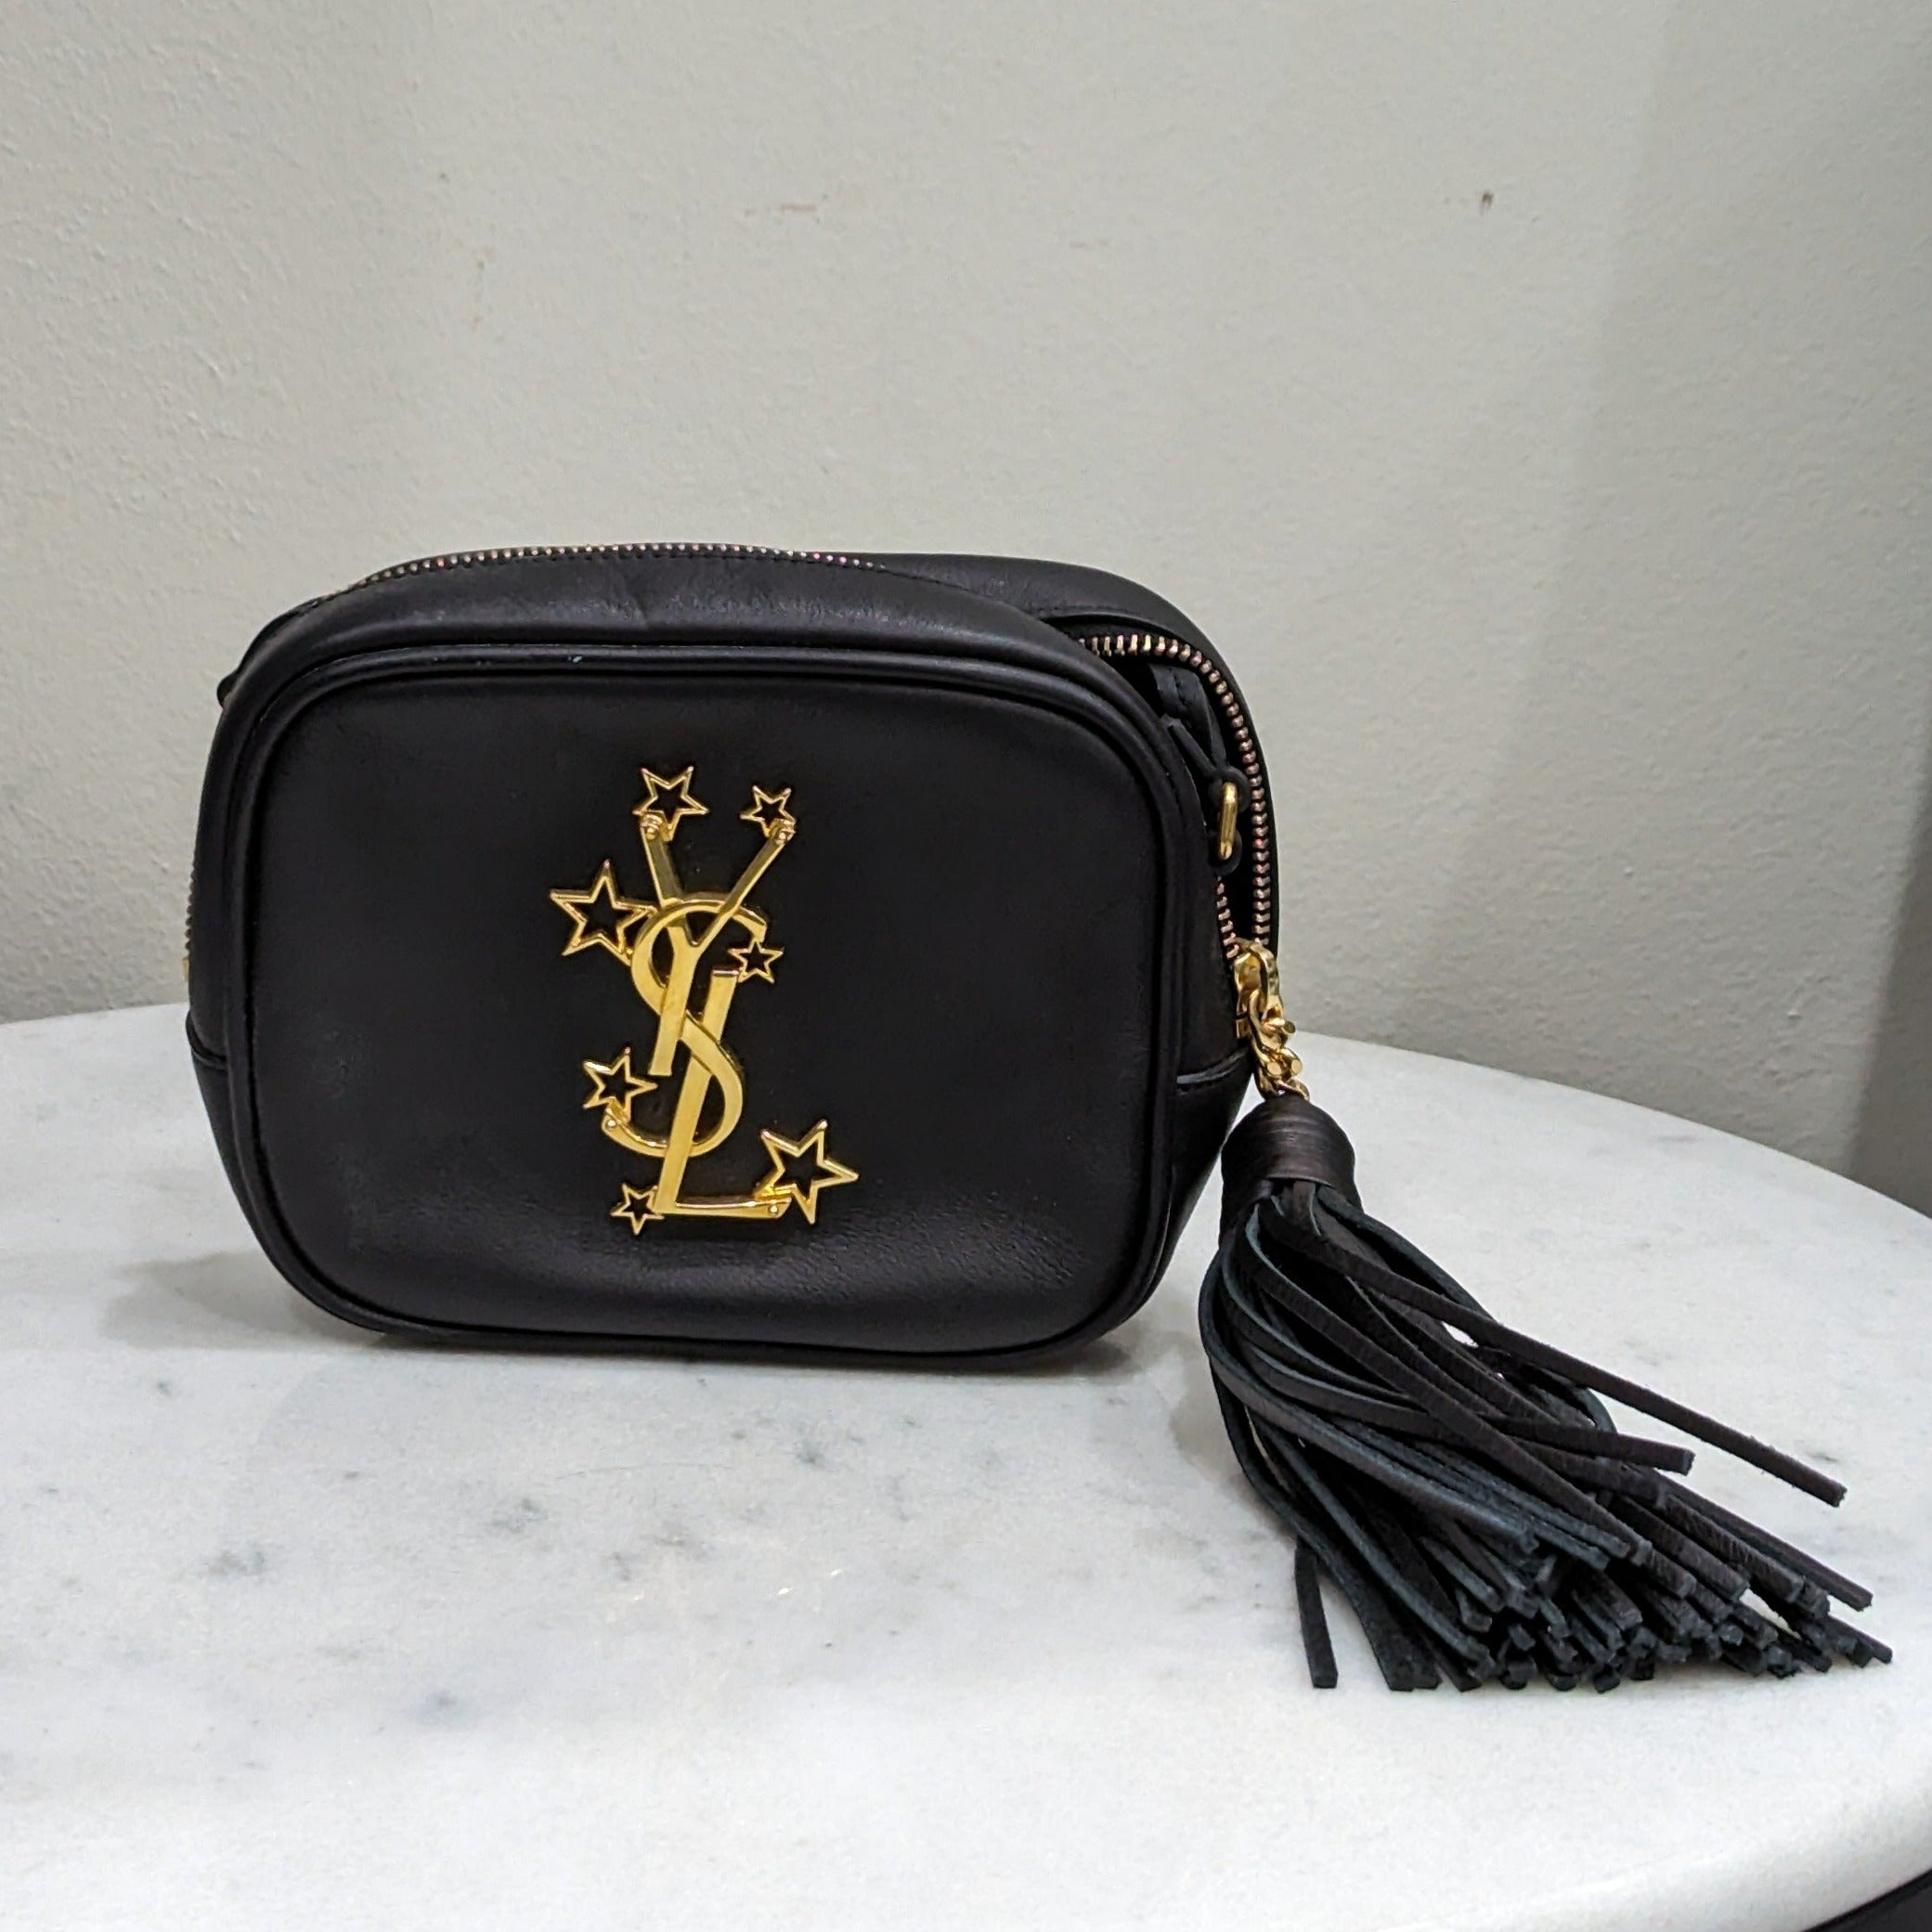 Yves Saint Laurent Black & Gold Cross Body Bag